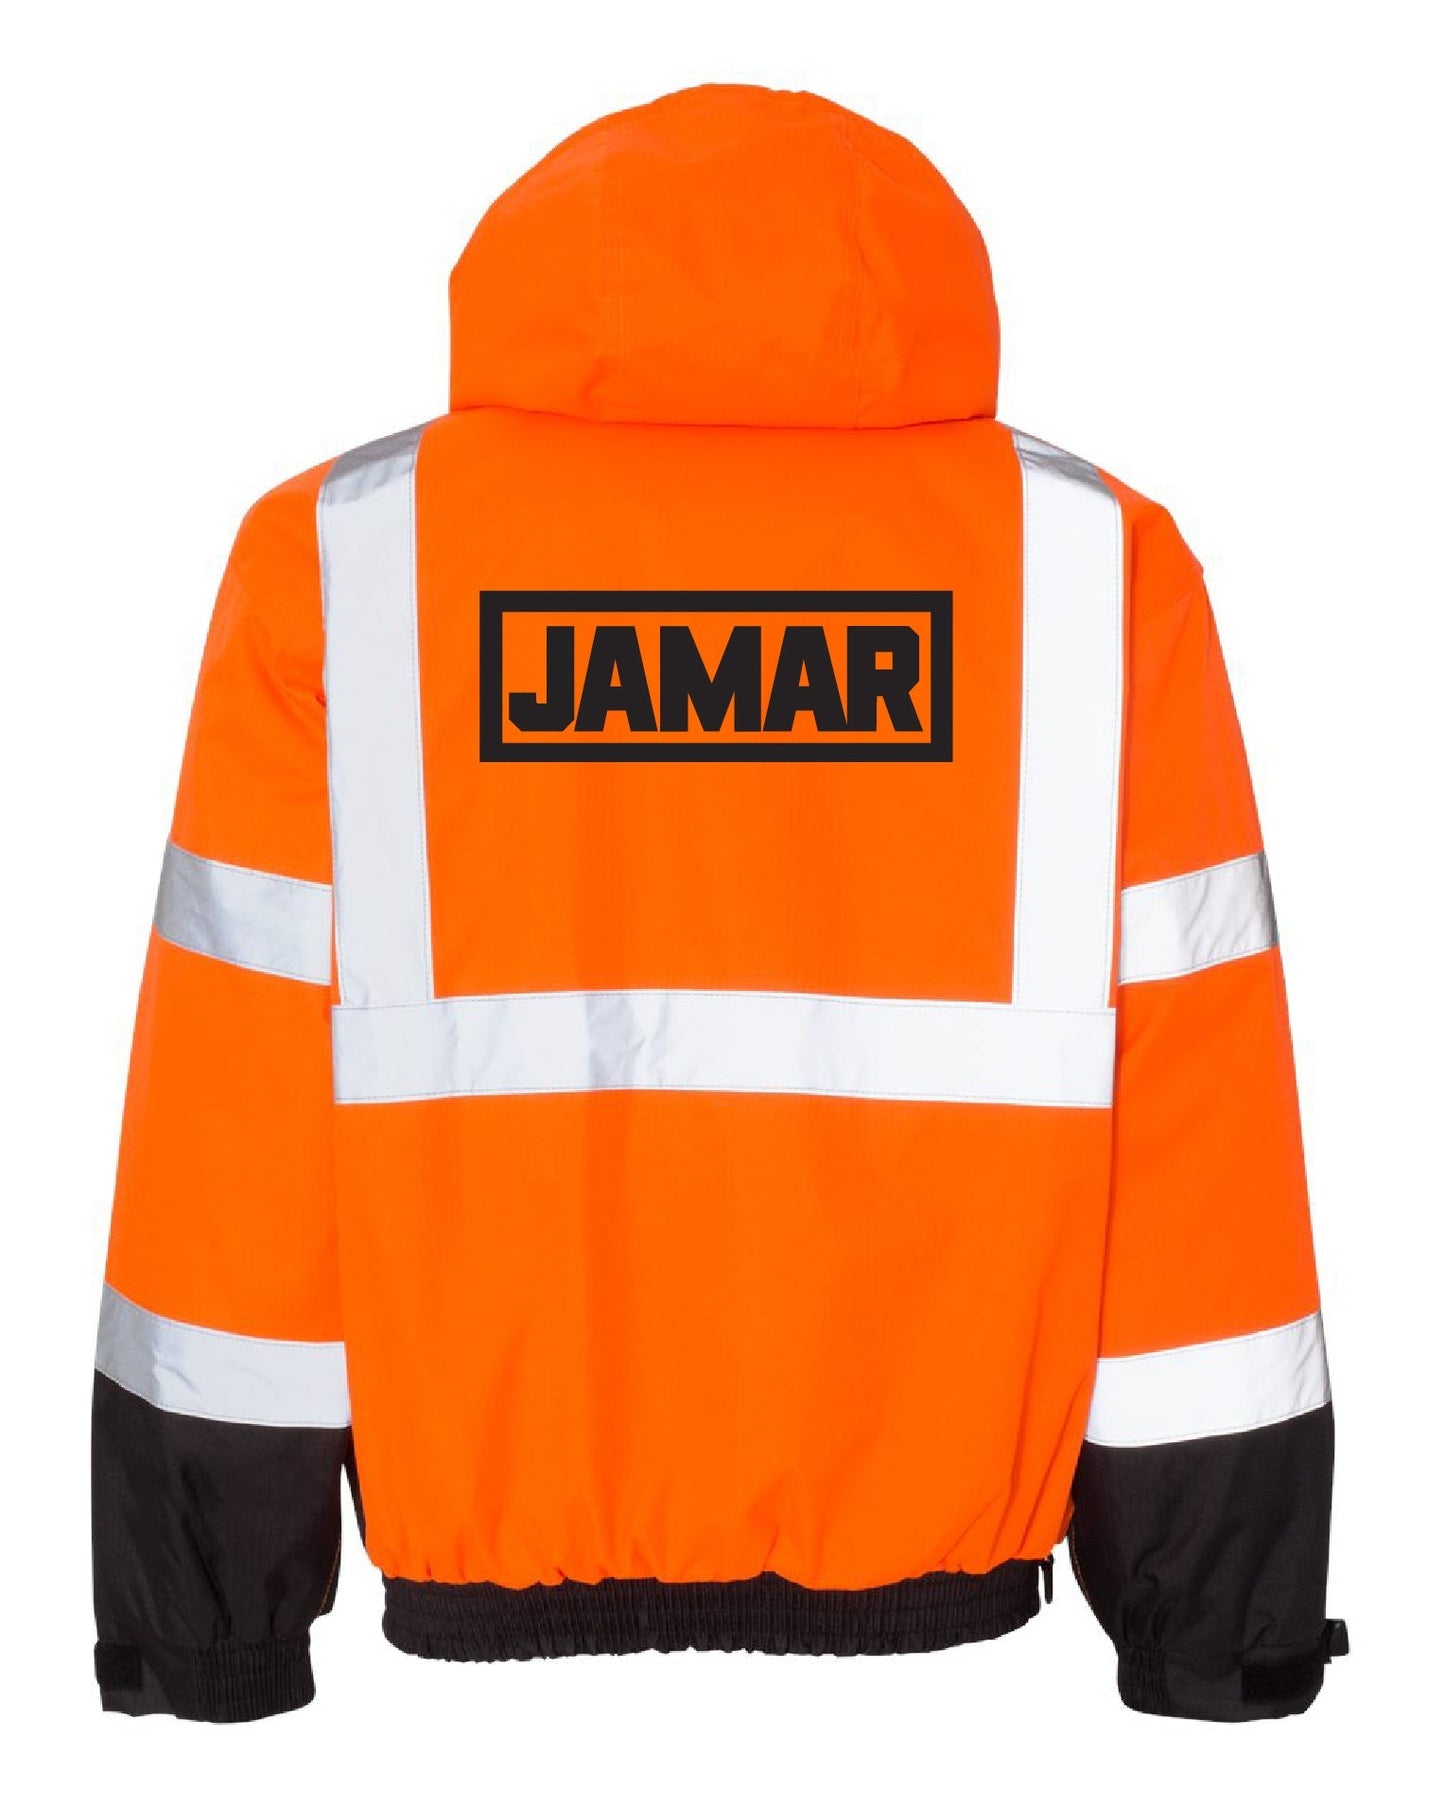 Jamar Service Team Jacket - DSP On Demand